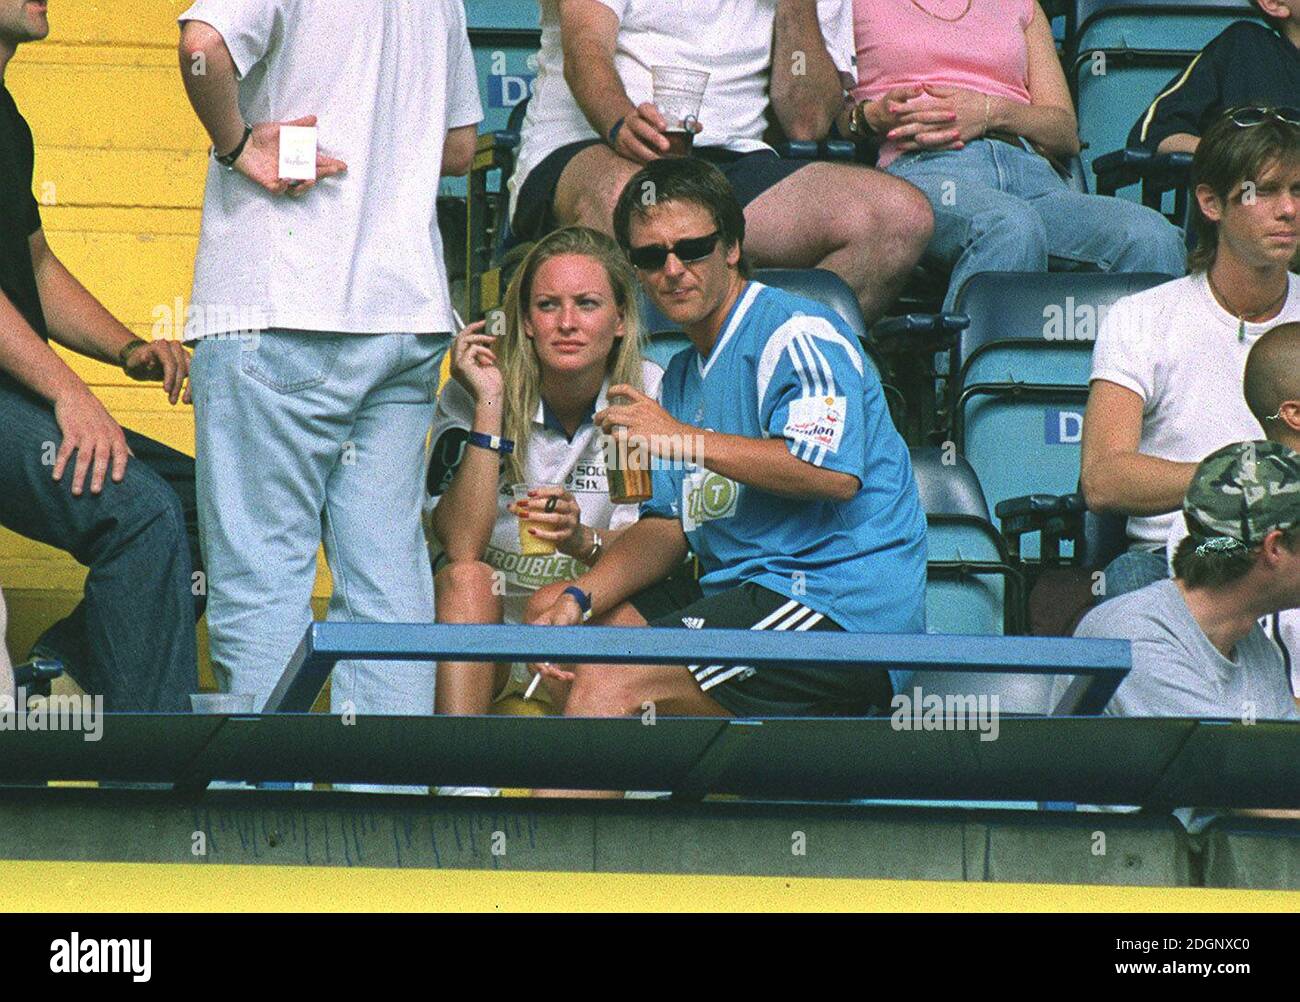 Joanna Taylor con Richie from Five al Concorso di Calcio Six Charity dell'industria della Musica, che si tiene allo Stamford Bridge Ground del Chelsea FC, Londra. Kit calcistico a mezza lunghezza. Foto Stock